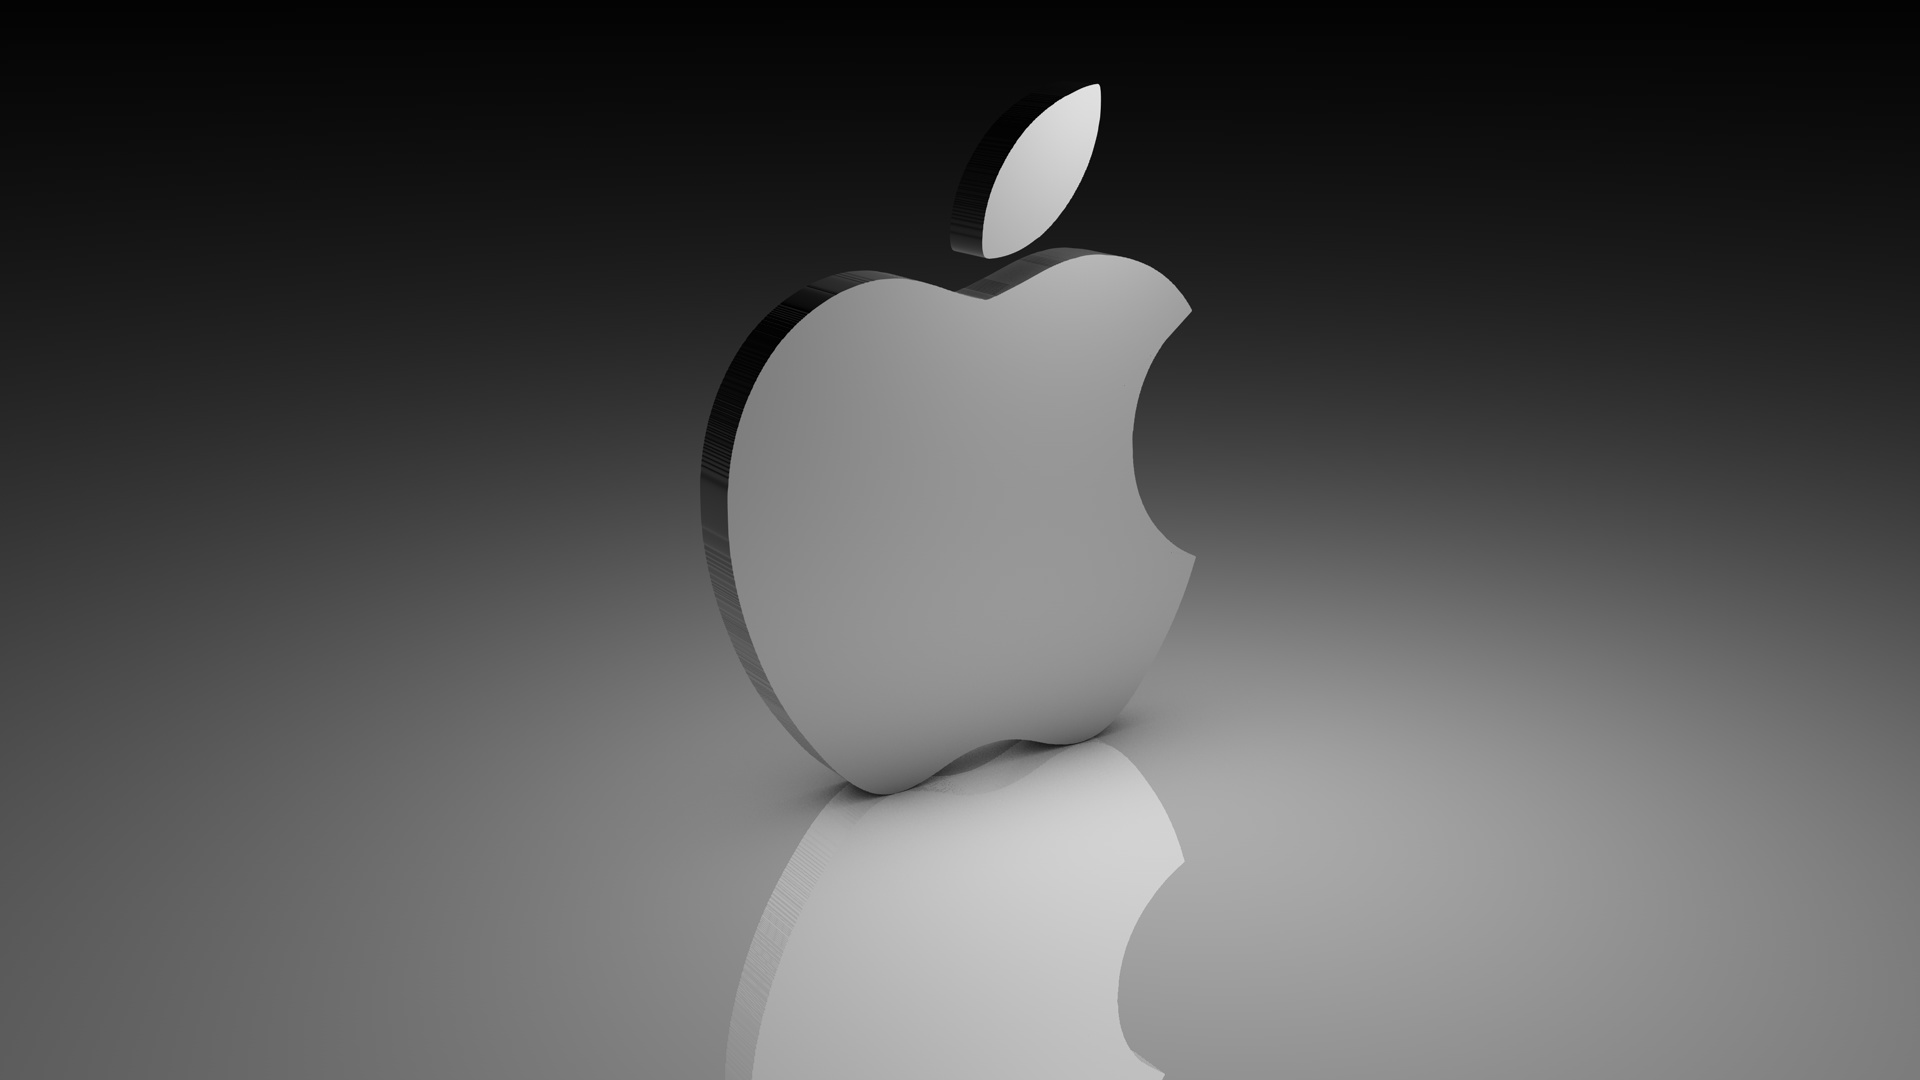 Dostępny jest iOS 11.3 beta – Apple daje wybór użytkownikom